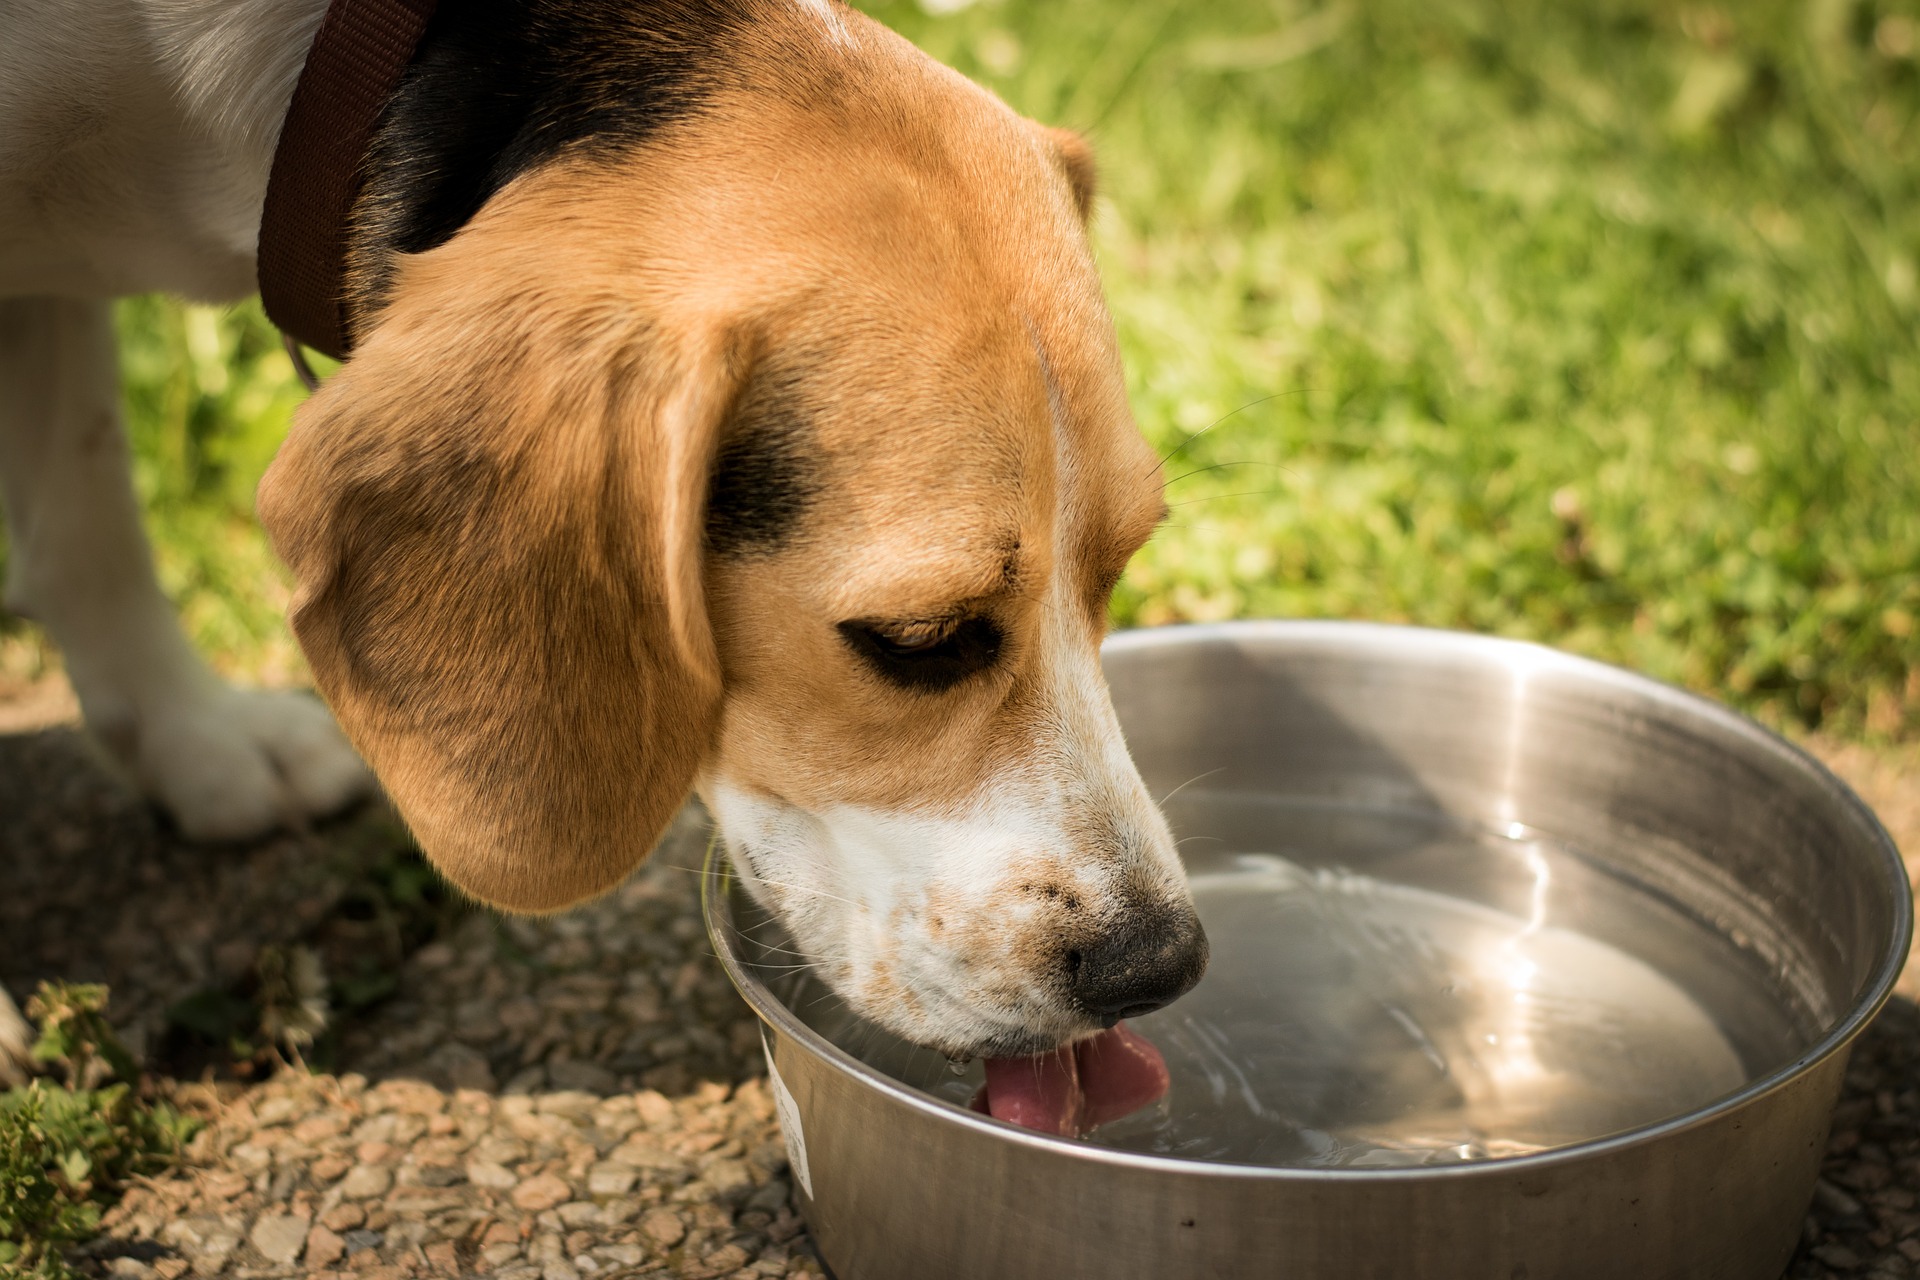 Las mascotas necesitan estar hidratadas, especialmente durante la época de calor. (Foto Prensa Libre: Servicios).